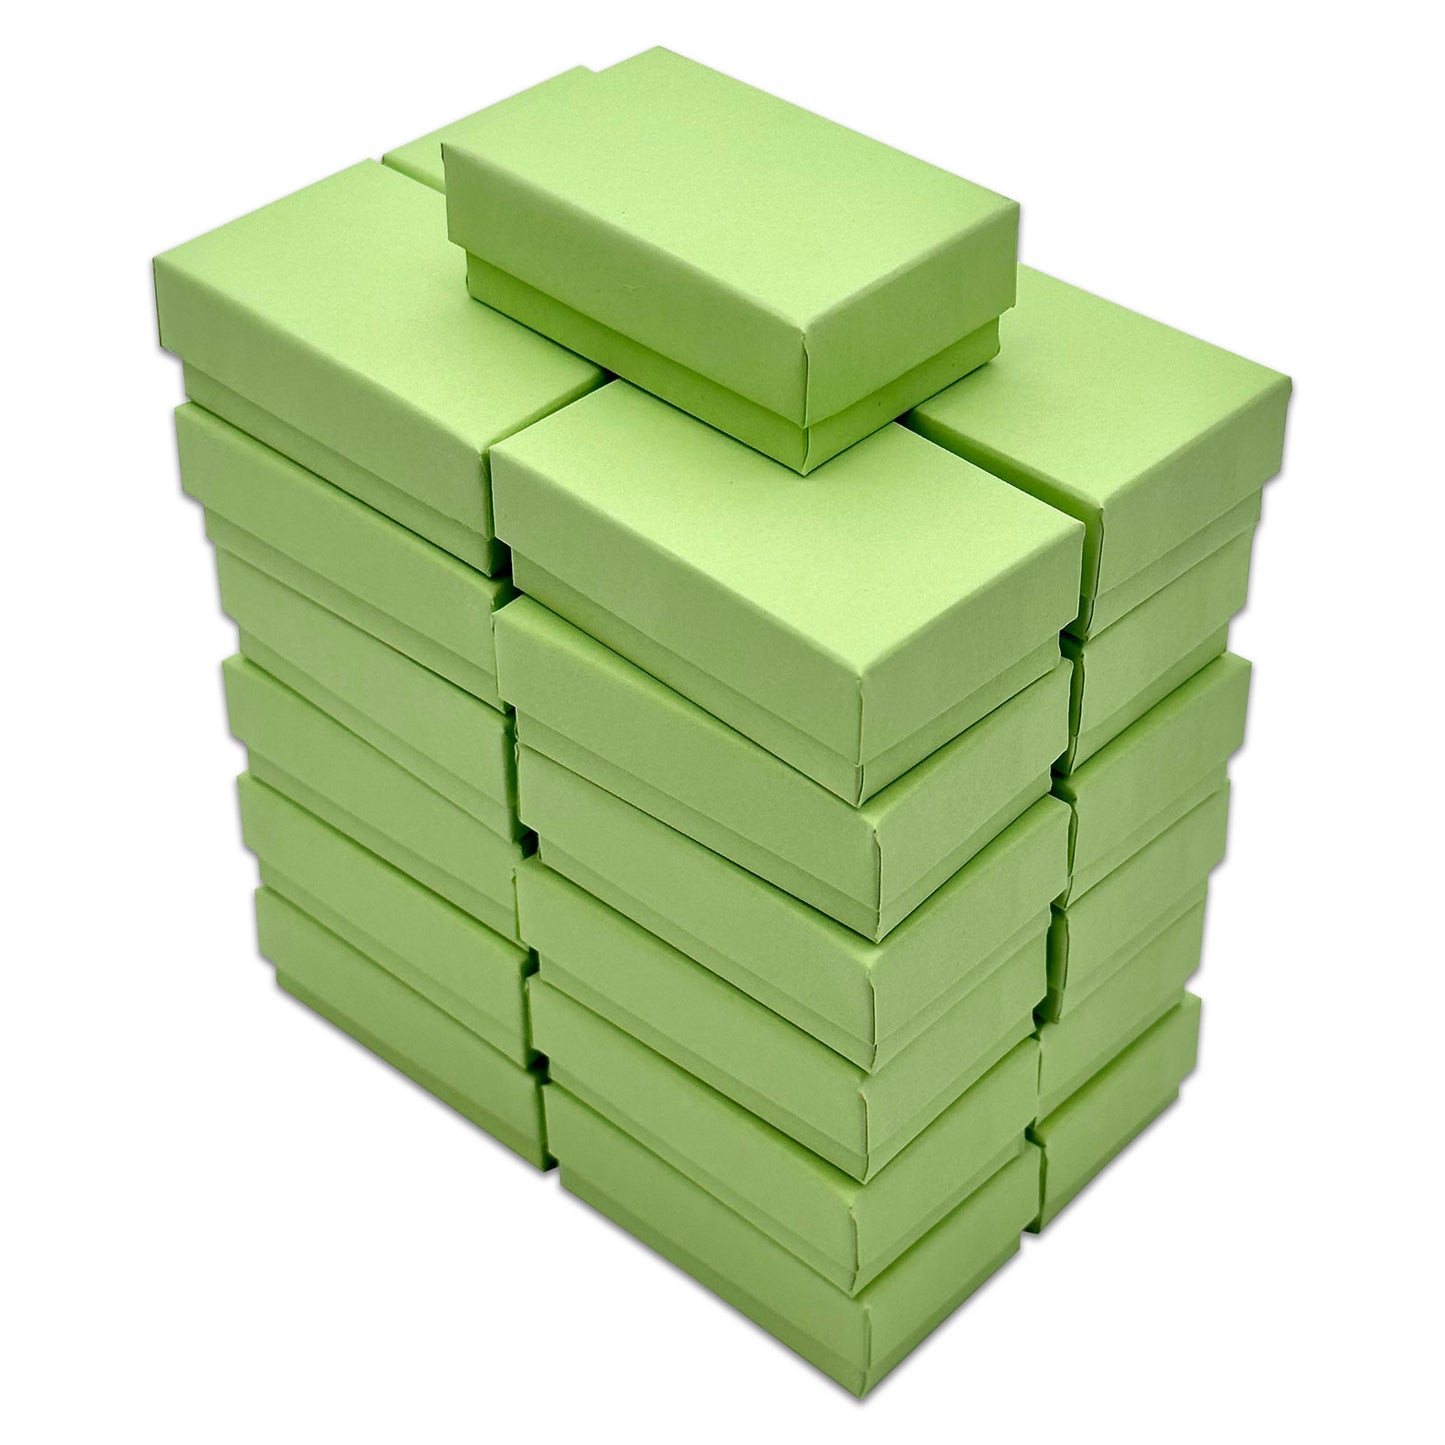 2 5/8" x 1 5/8" x 1" Mint Green Cotton Filled Paper Box